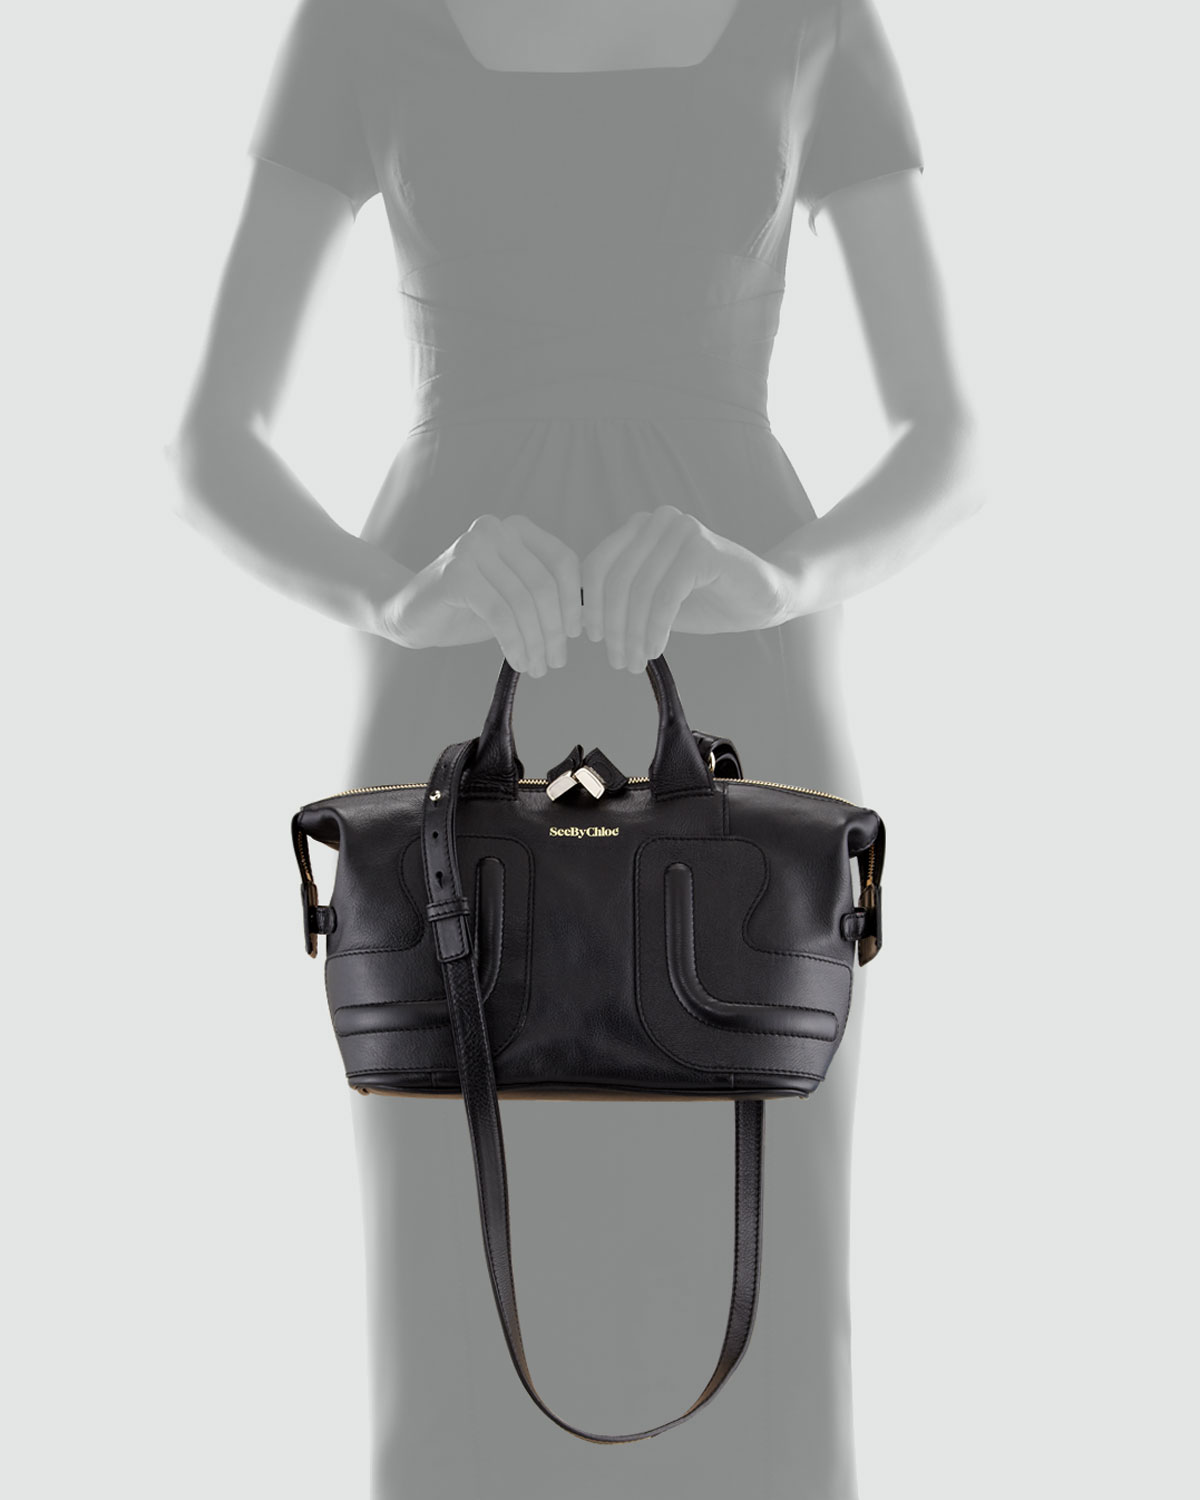 chloe marcie gray - See by chlo Kay Leather Satchel Bag Black in Black | Lyst